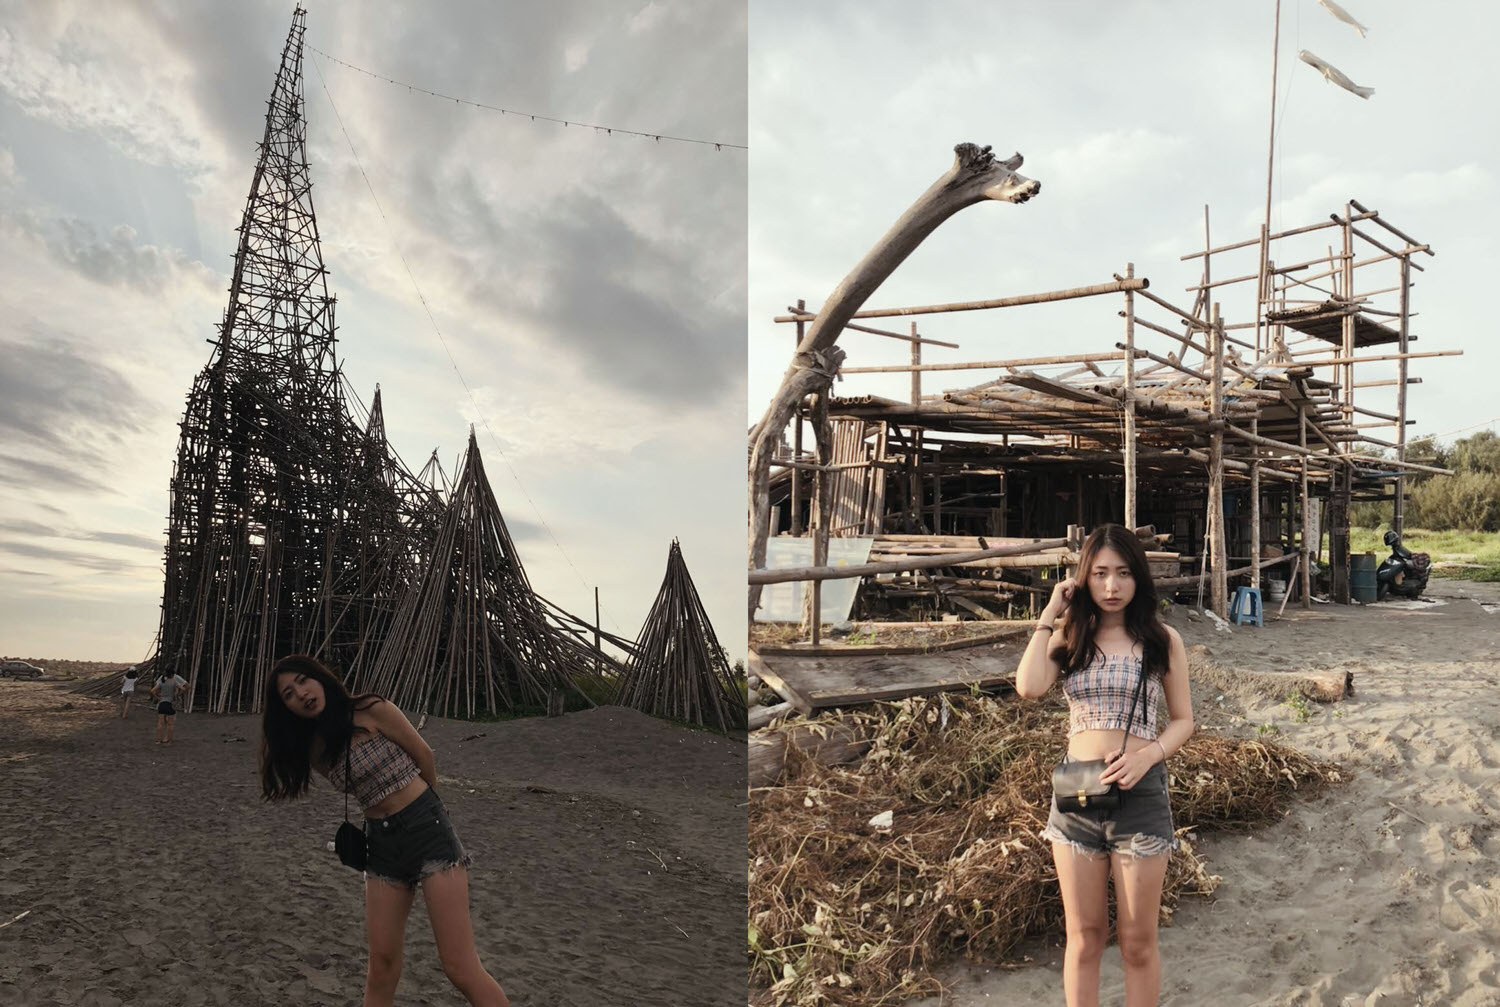 穿著露肩衣服的女孩站在沙灘上，身後有著用竹子編成的高塔與小屋